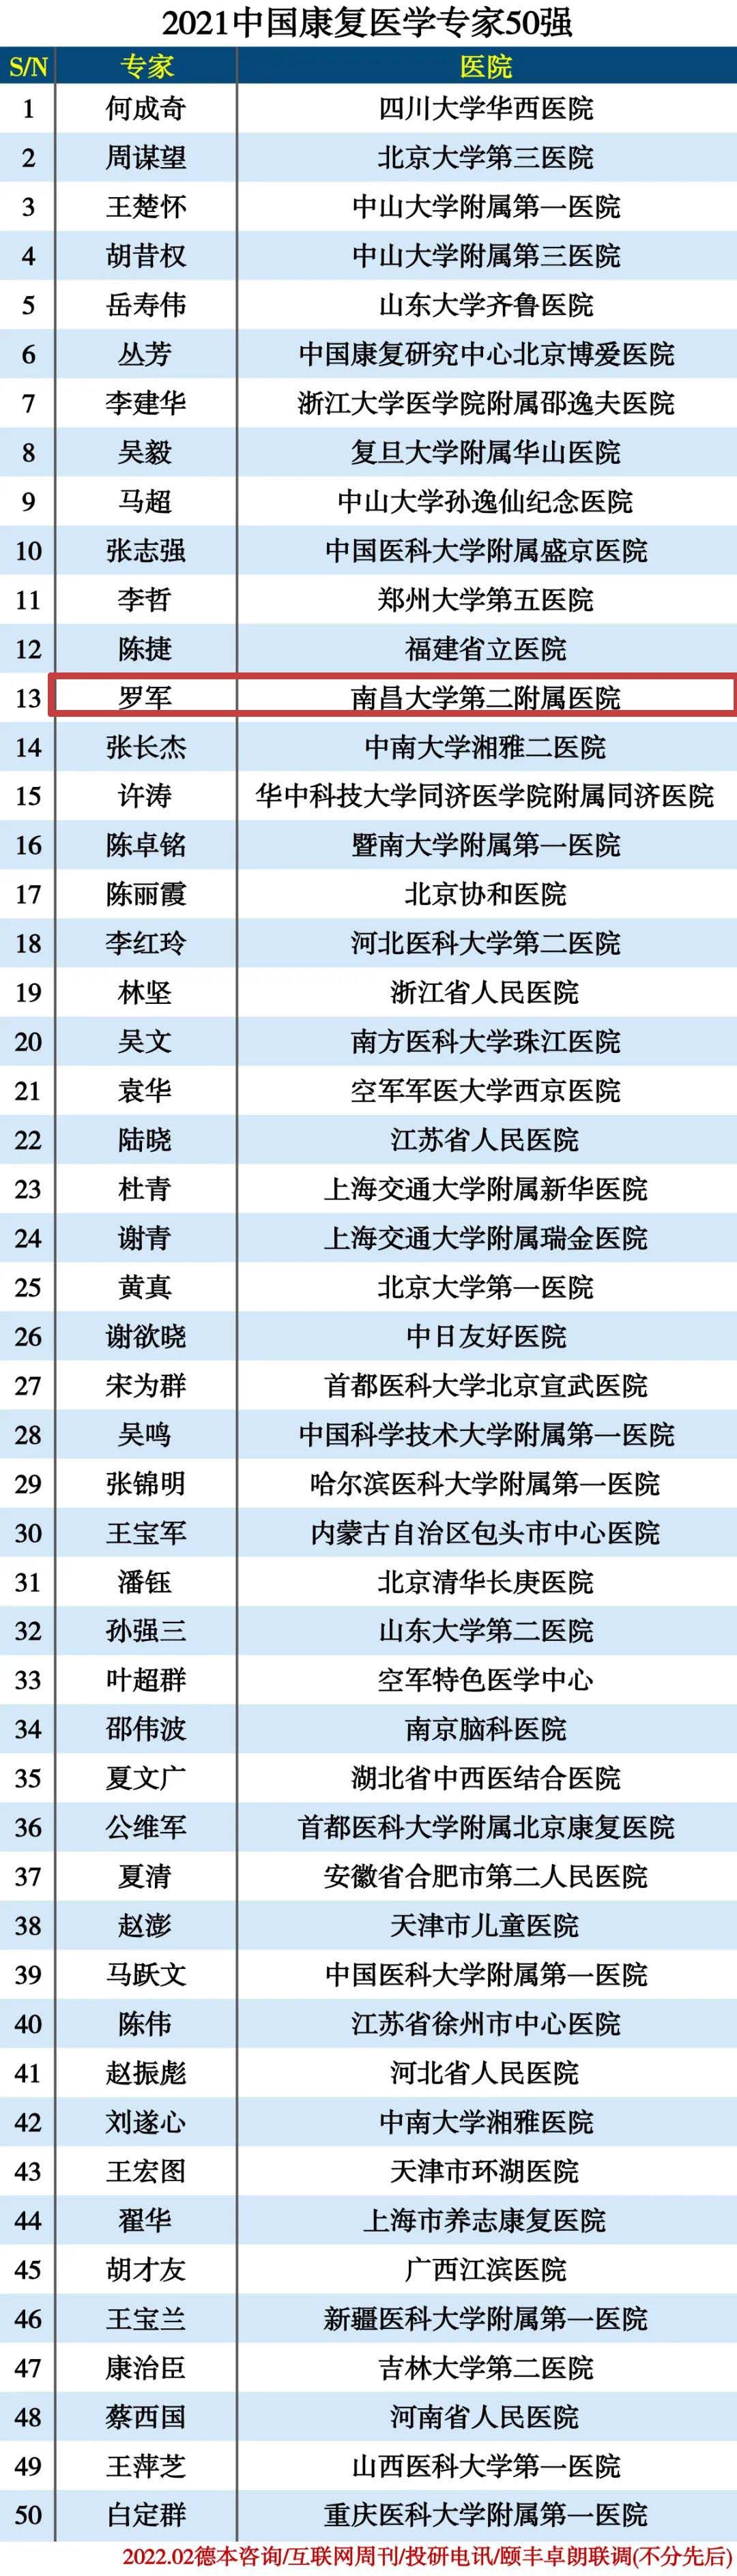 好消息！南昌大学二附院罗军教授位列「2021 中国康复医学专家 50 强」排行榜第 13 位